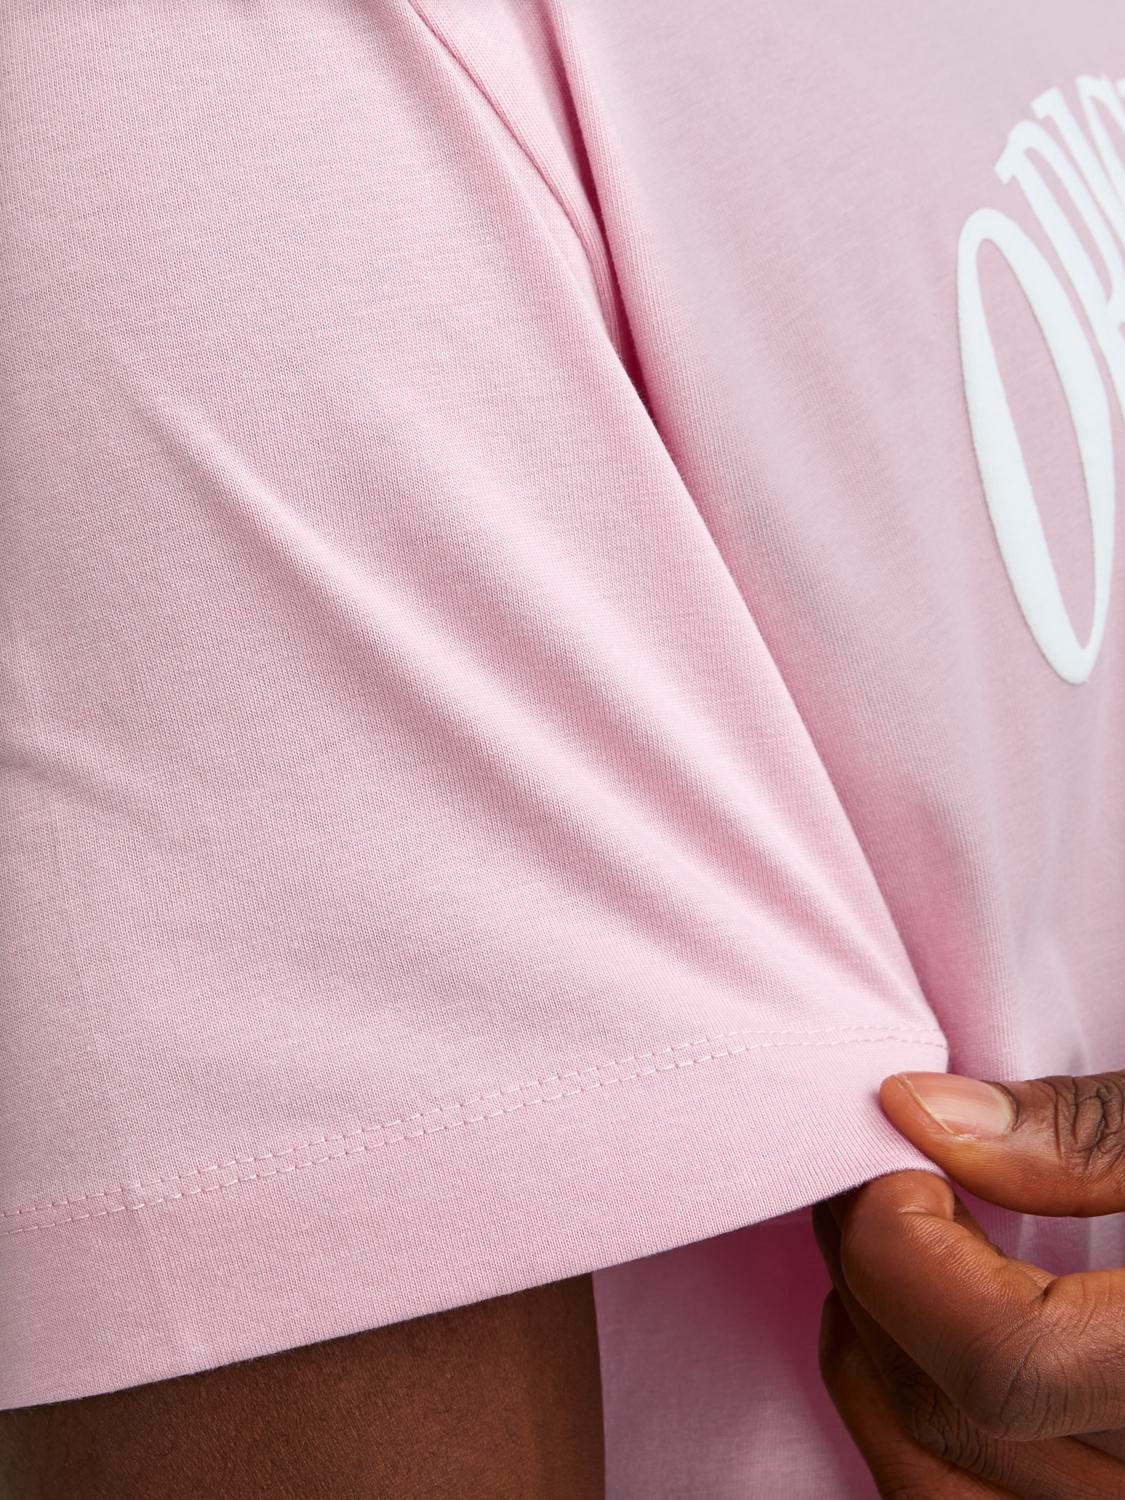 Jack & Jones Gedruckt Rundhals T-shirt -Pink Nectar - 12251899